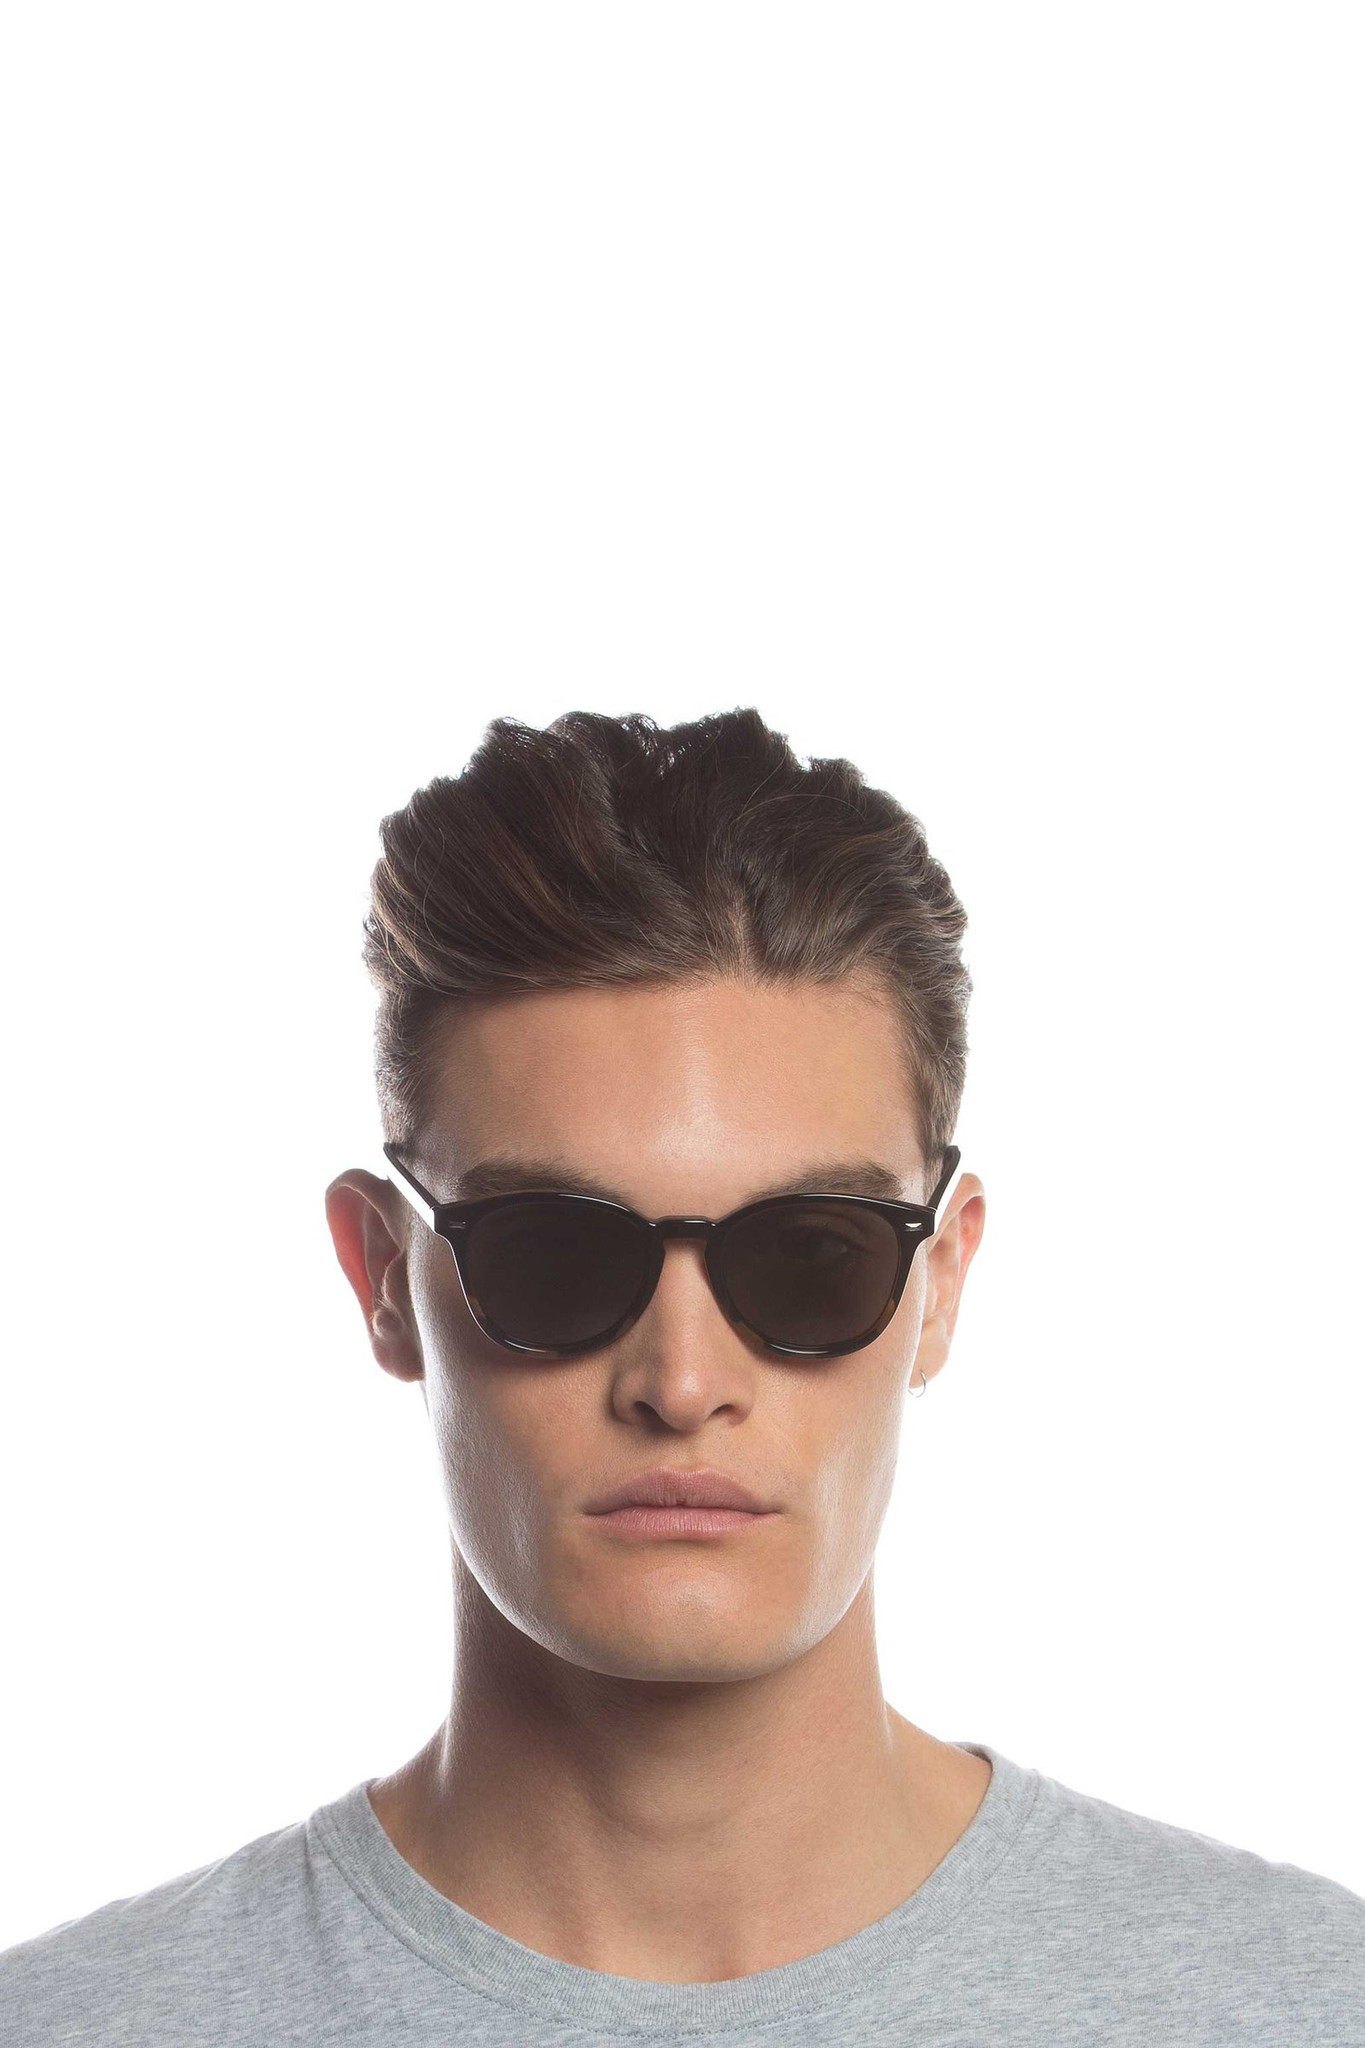 Bandwagon Sunglasses - Black Tortoise Polarized-5